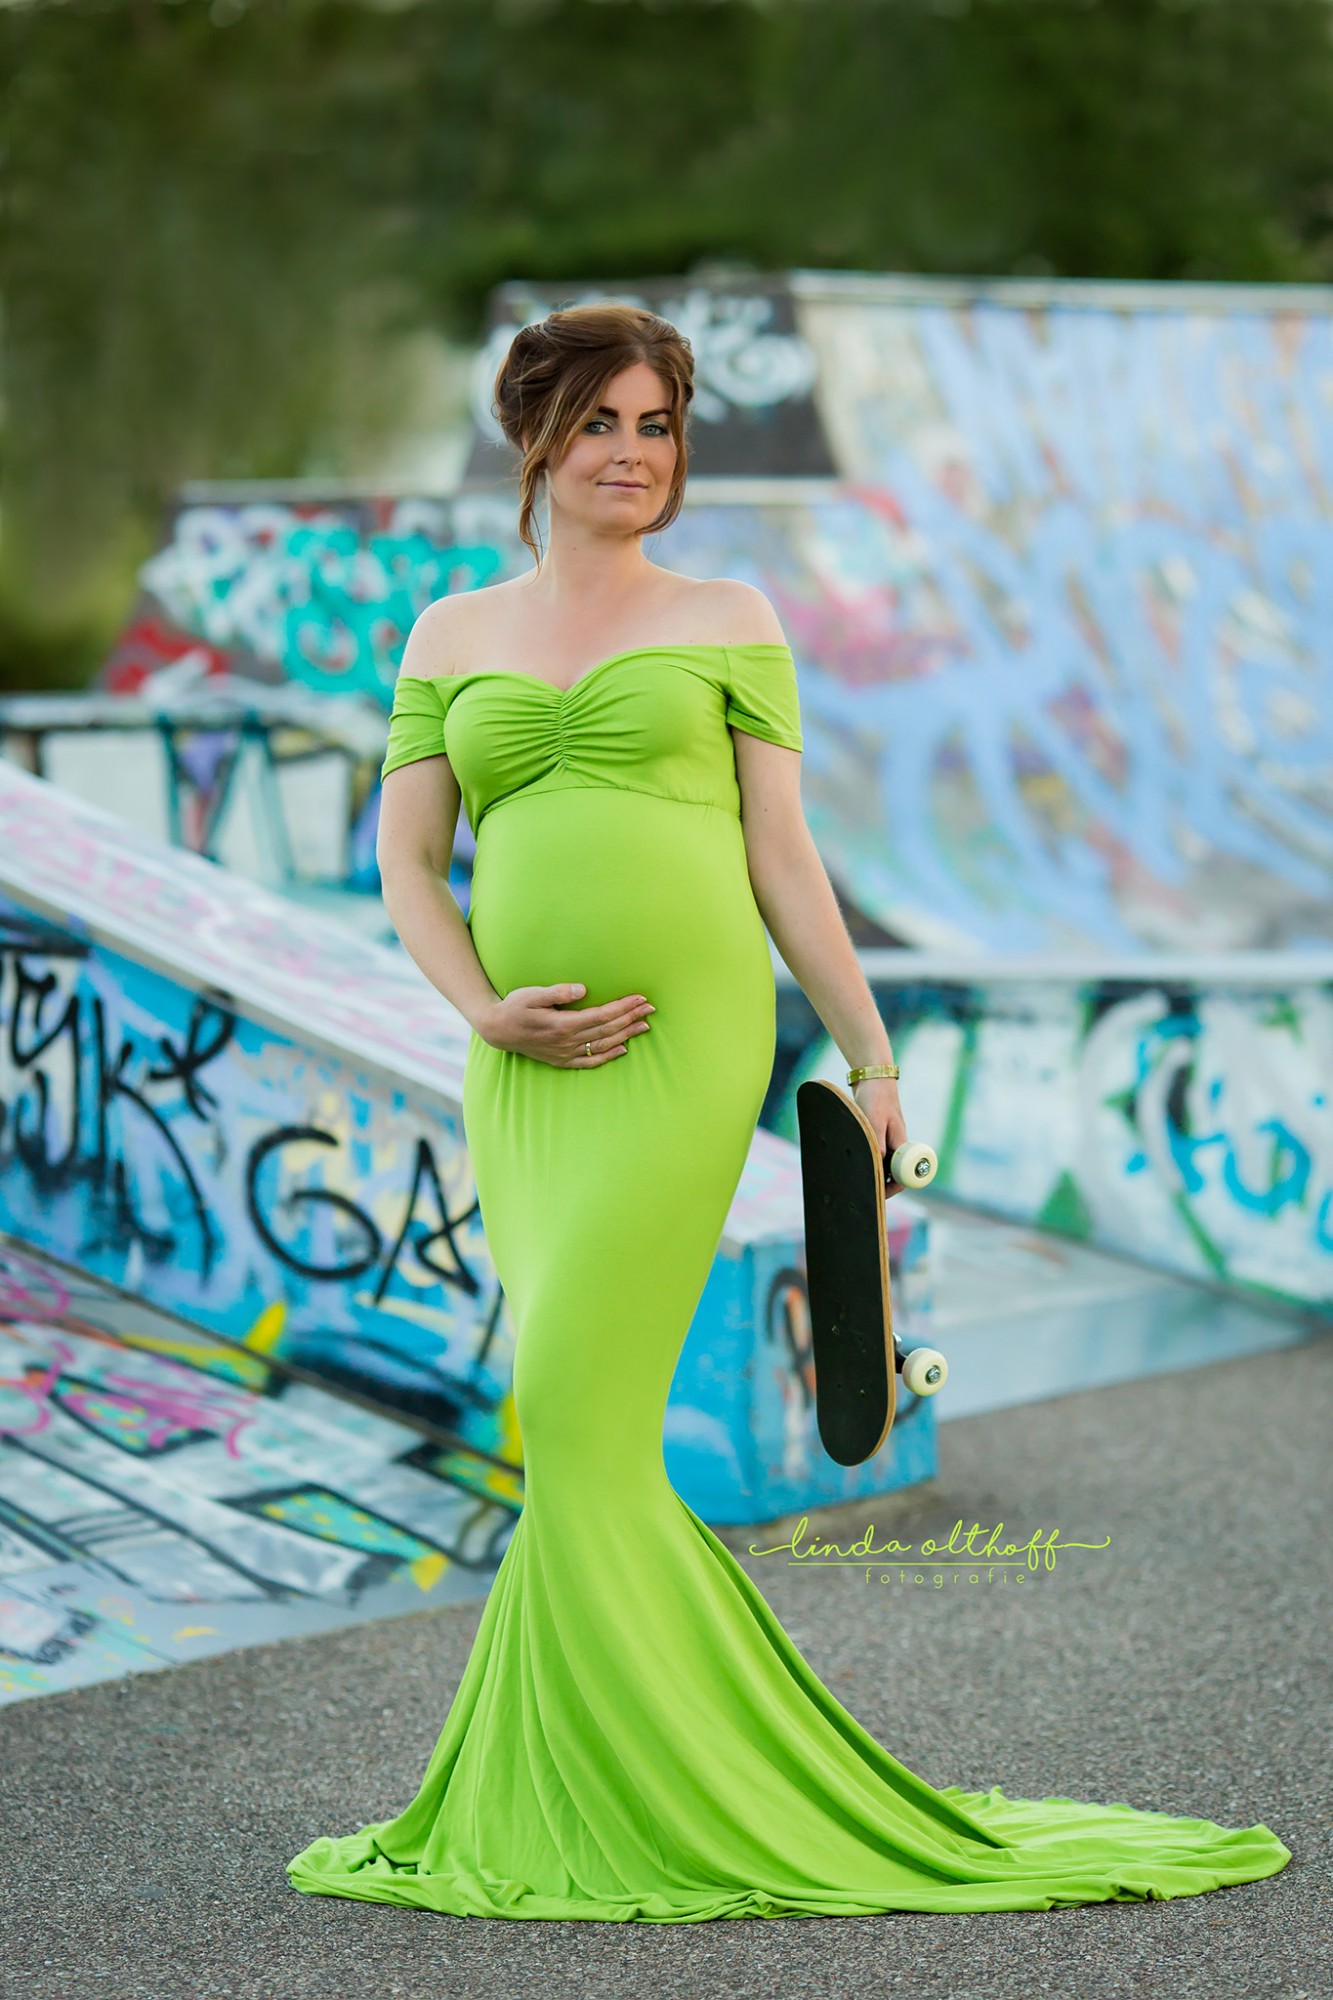 Pinkstudio by Angelina Devine Maternityshoot-The-Green-Dress-Mii-Estilo-Linda-Olthoff-Fotografie-fb08 Den grønne kjole - del 1 Nyheder Portræt Tilbud  